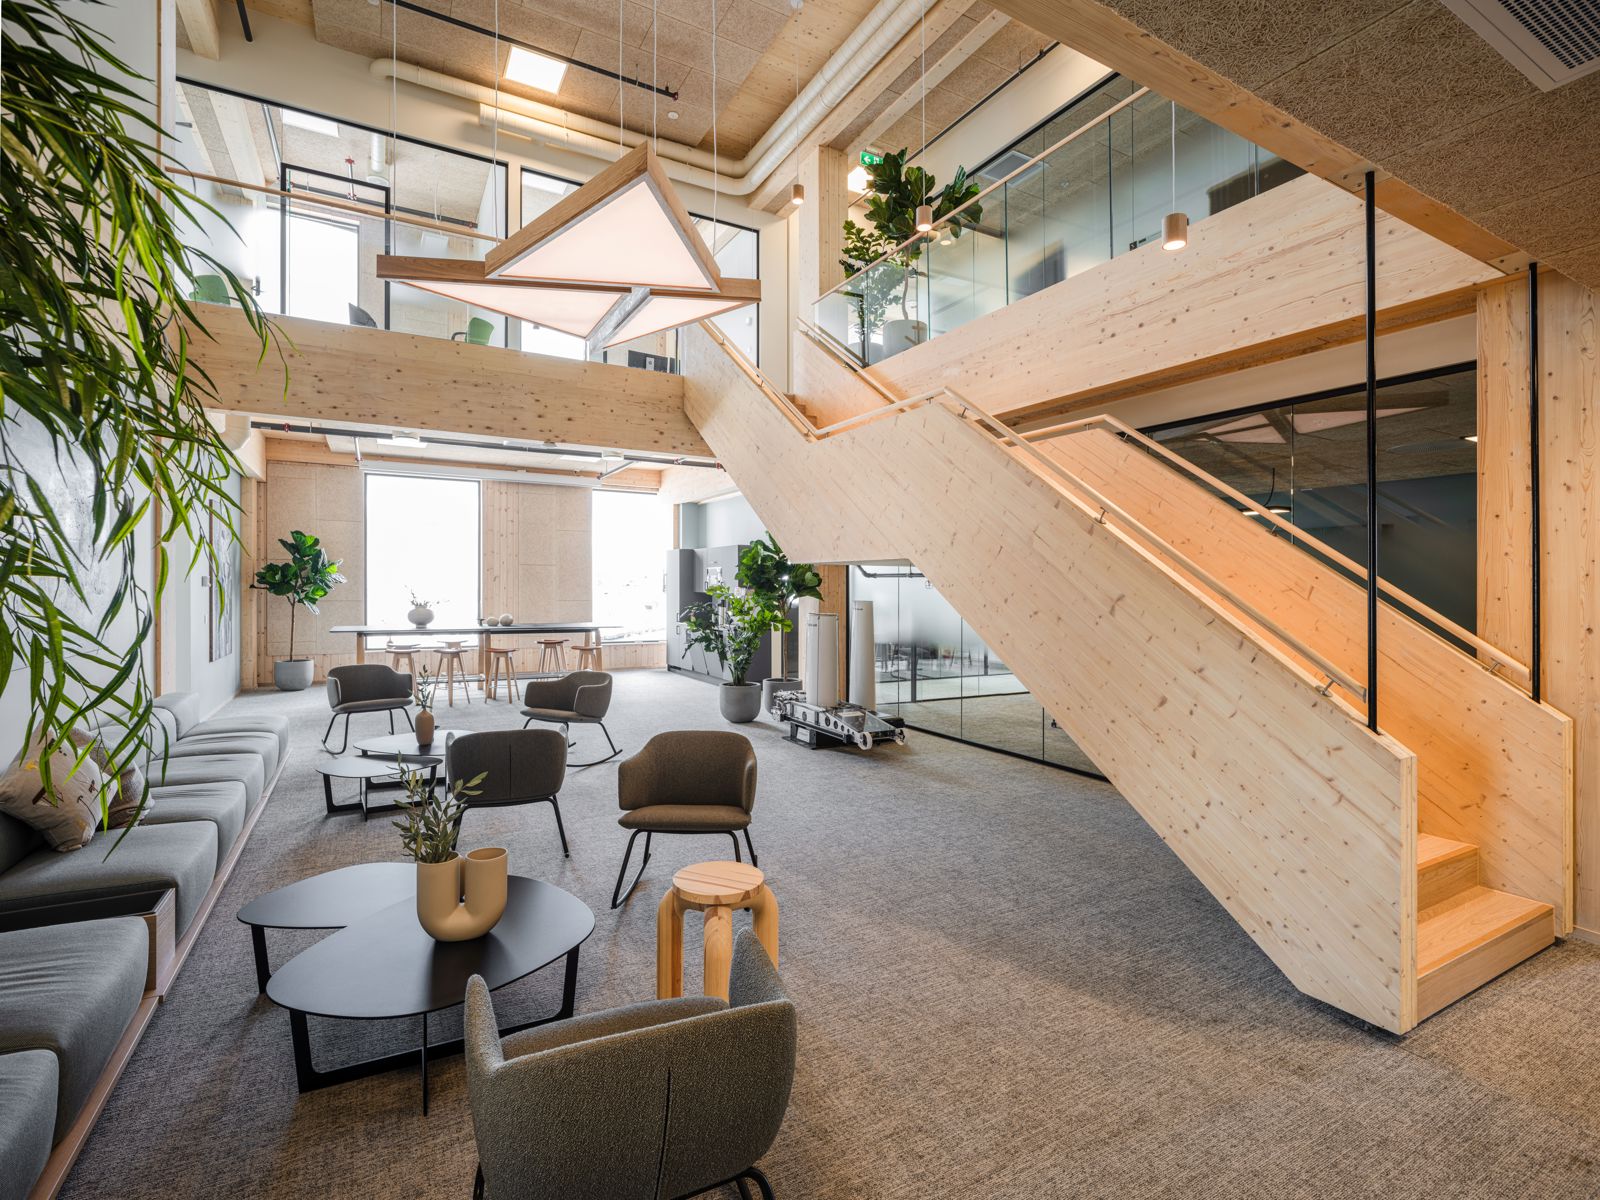 Interiørfoto av kontor/næringsbygg, dobbelthøyt fellesrom, trapper og dekker i treverk.